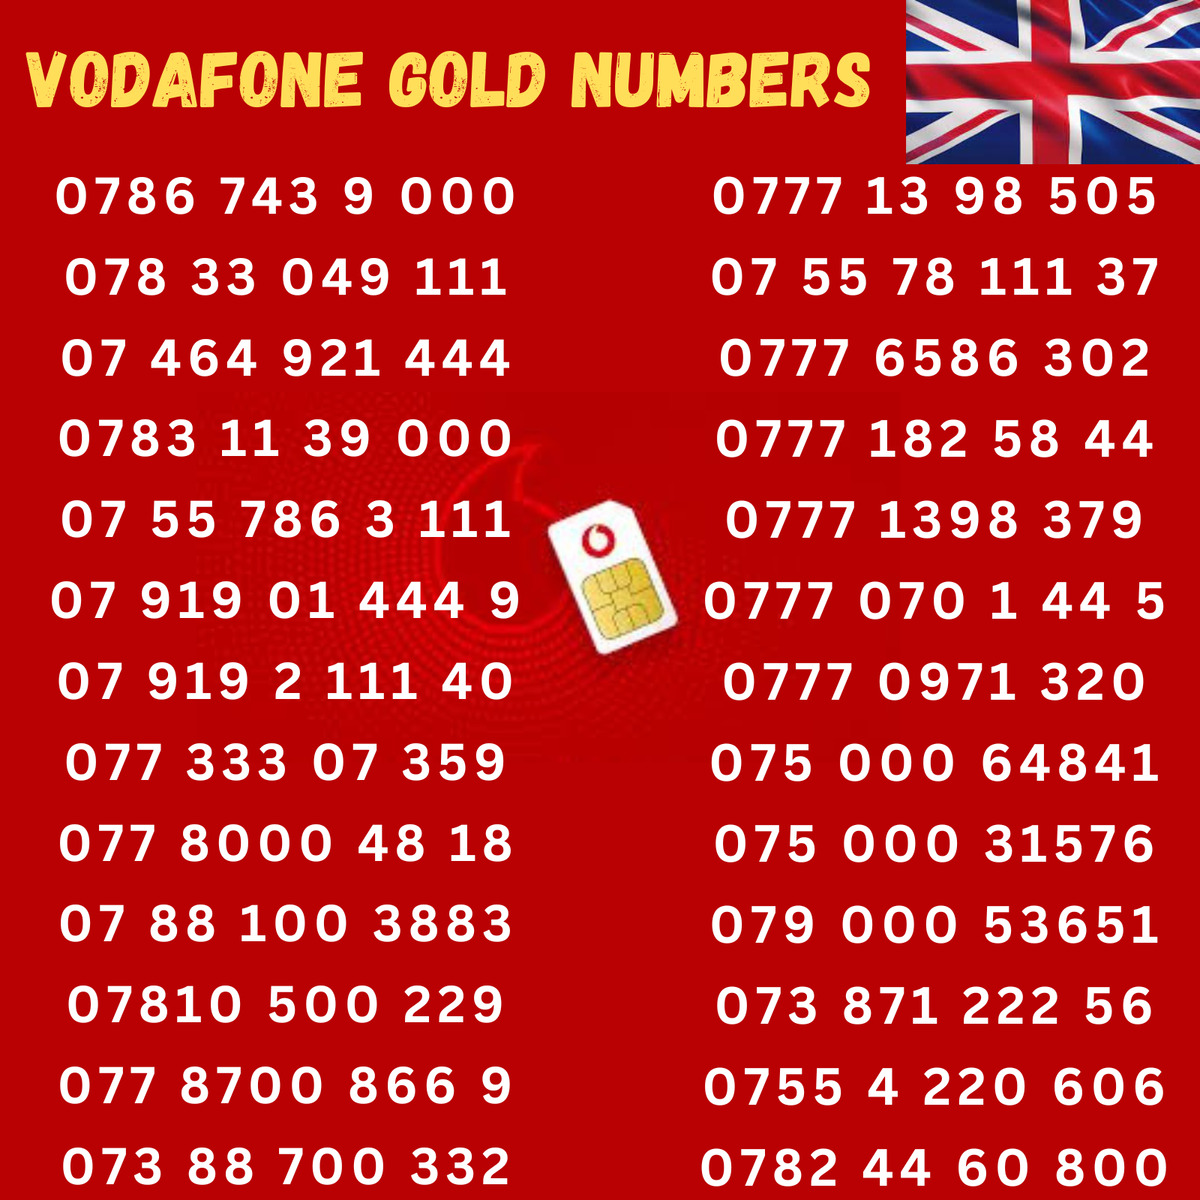 vodafone gold number